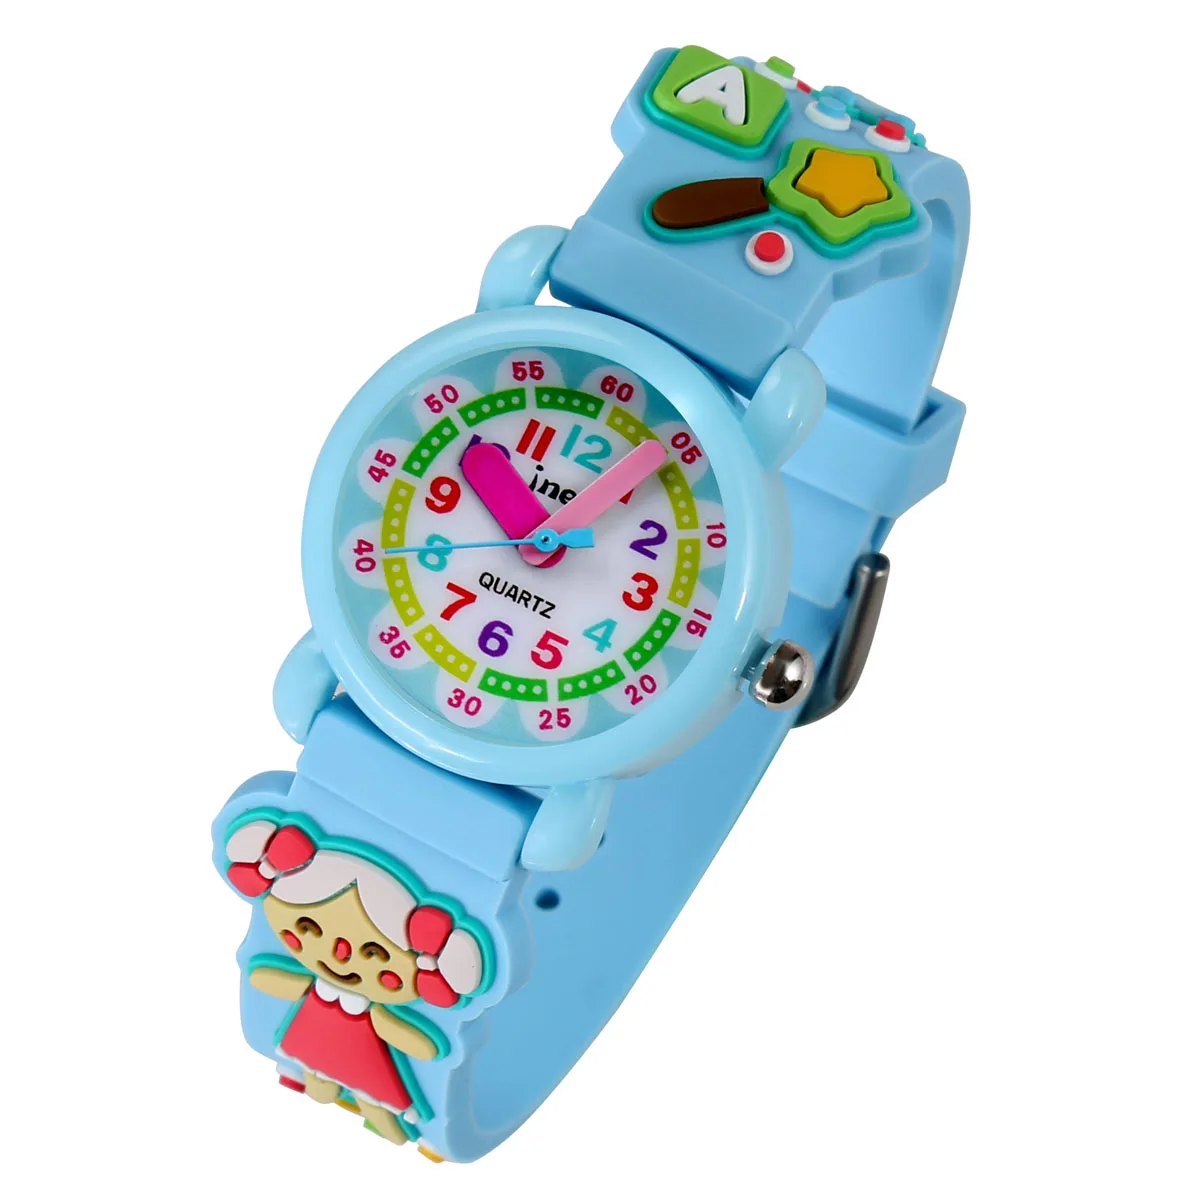 Оптовая продажа с фабрики Jnew, Детские водонепроницаемые часы с мультяшным рисунком, милые кварцевые часы, водонепроницаемые часы для студентов и детей